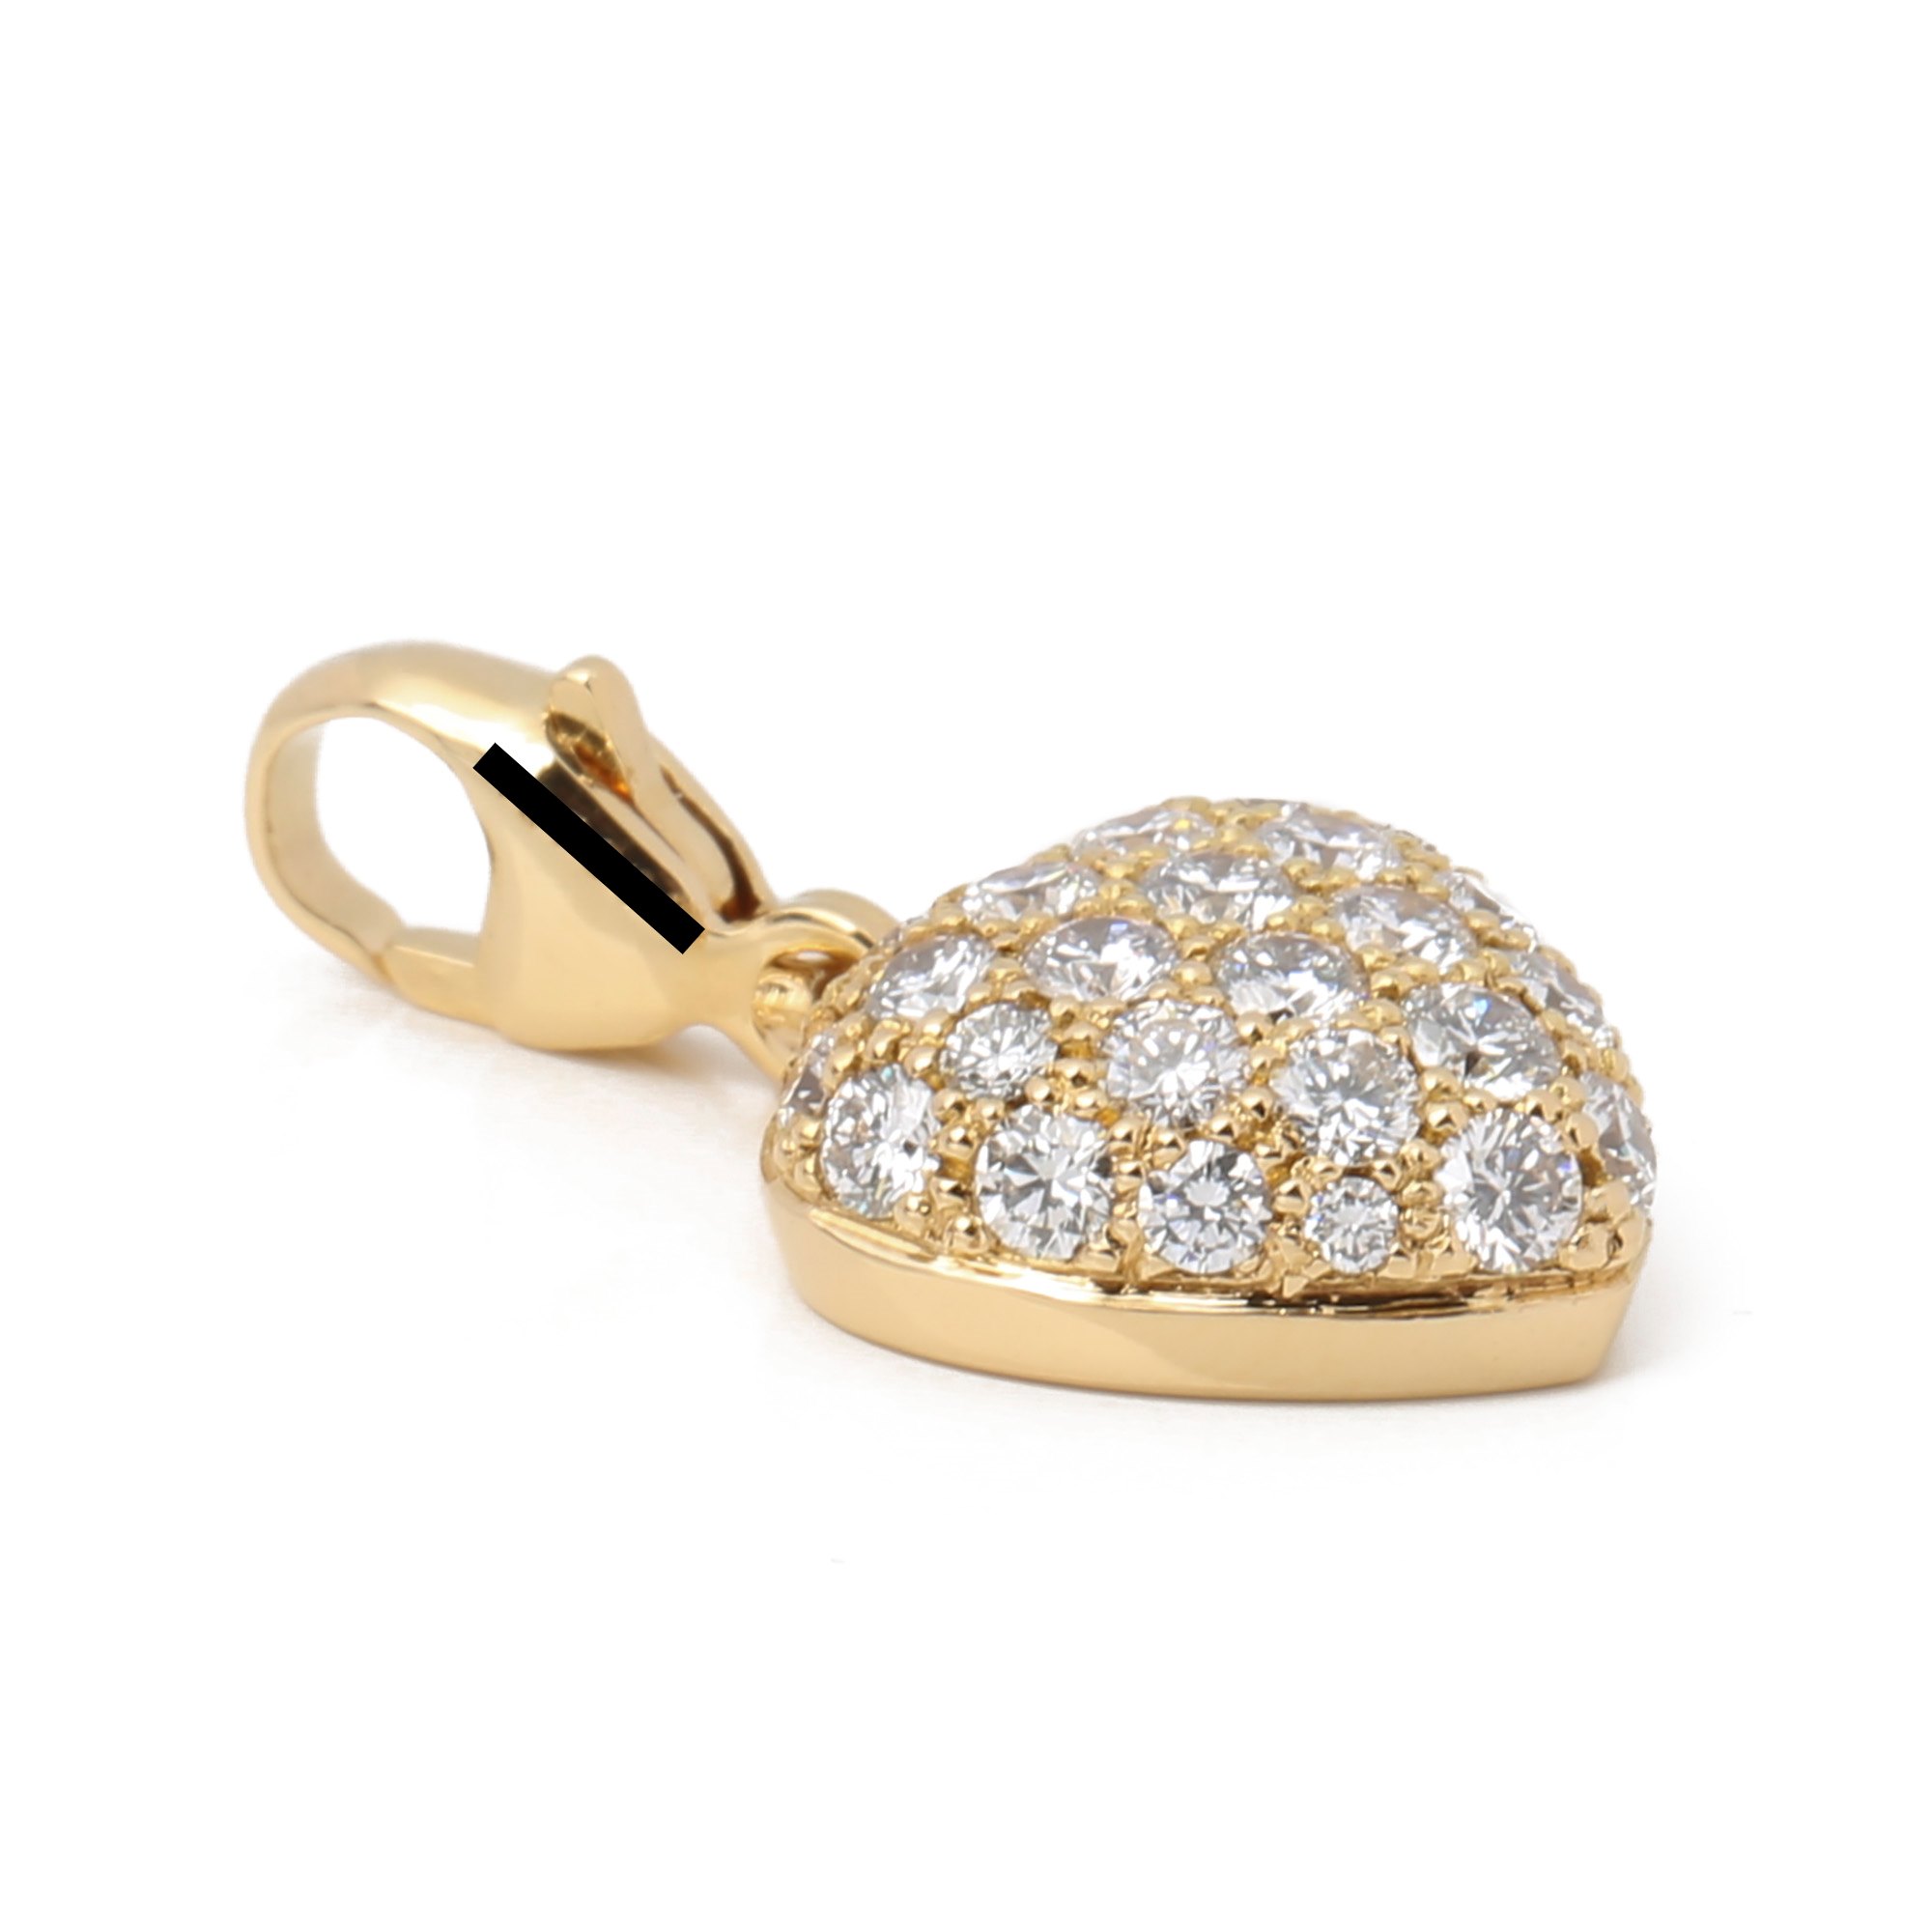 Cartier Pave Diamond Heart Charm Pendant